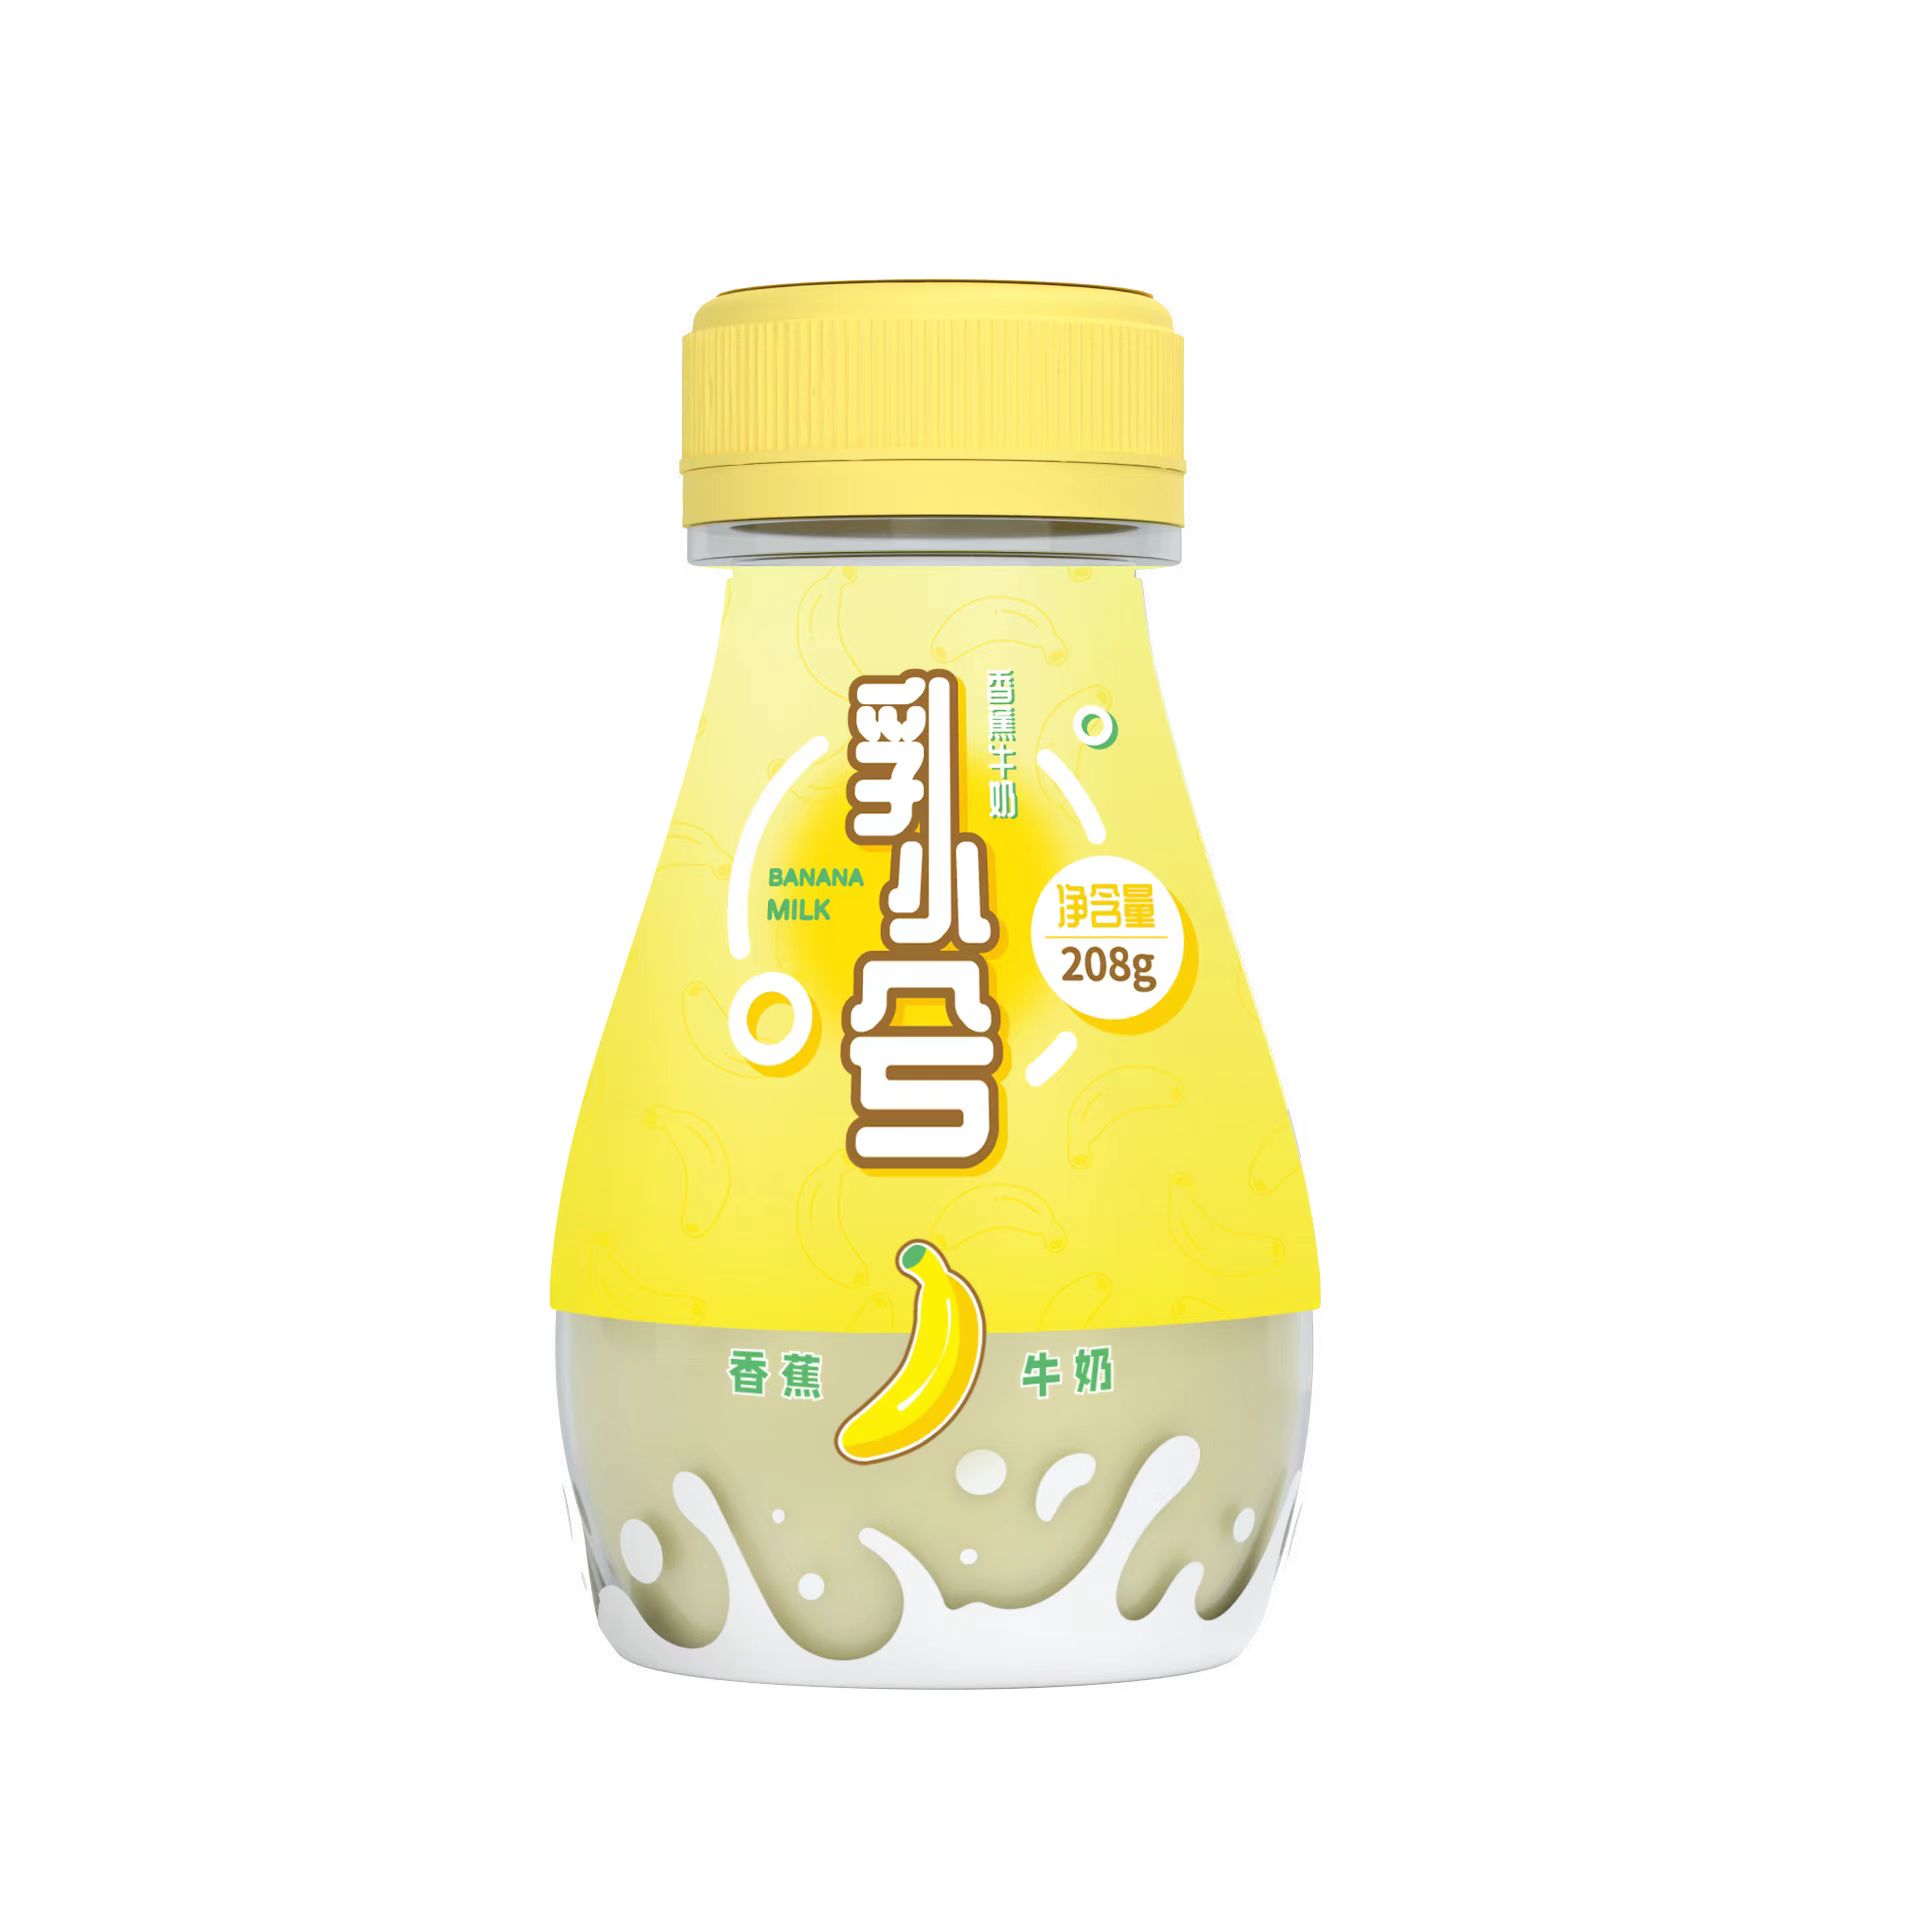 ruxiaoxi banana milk